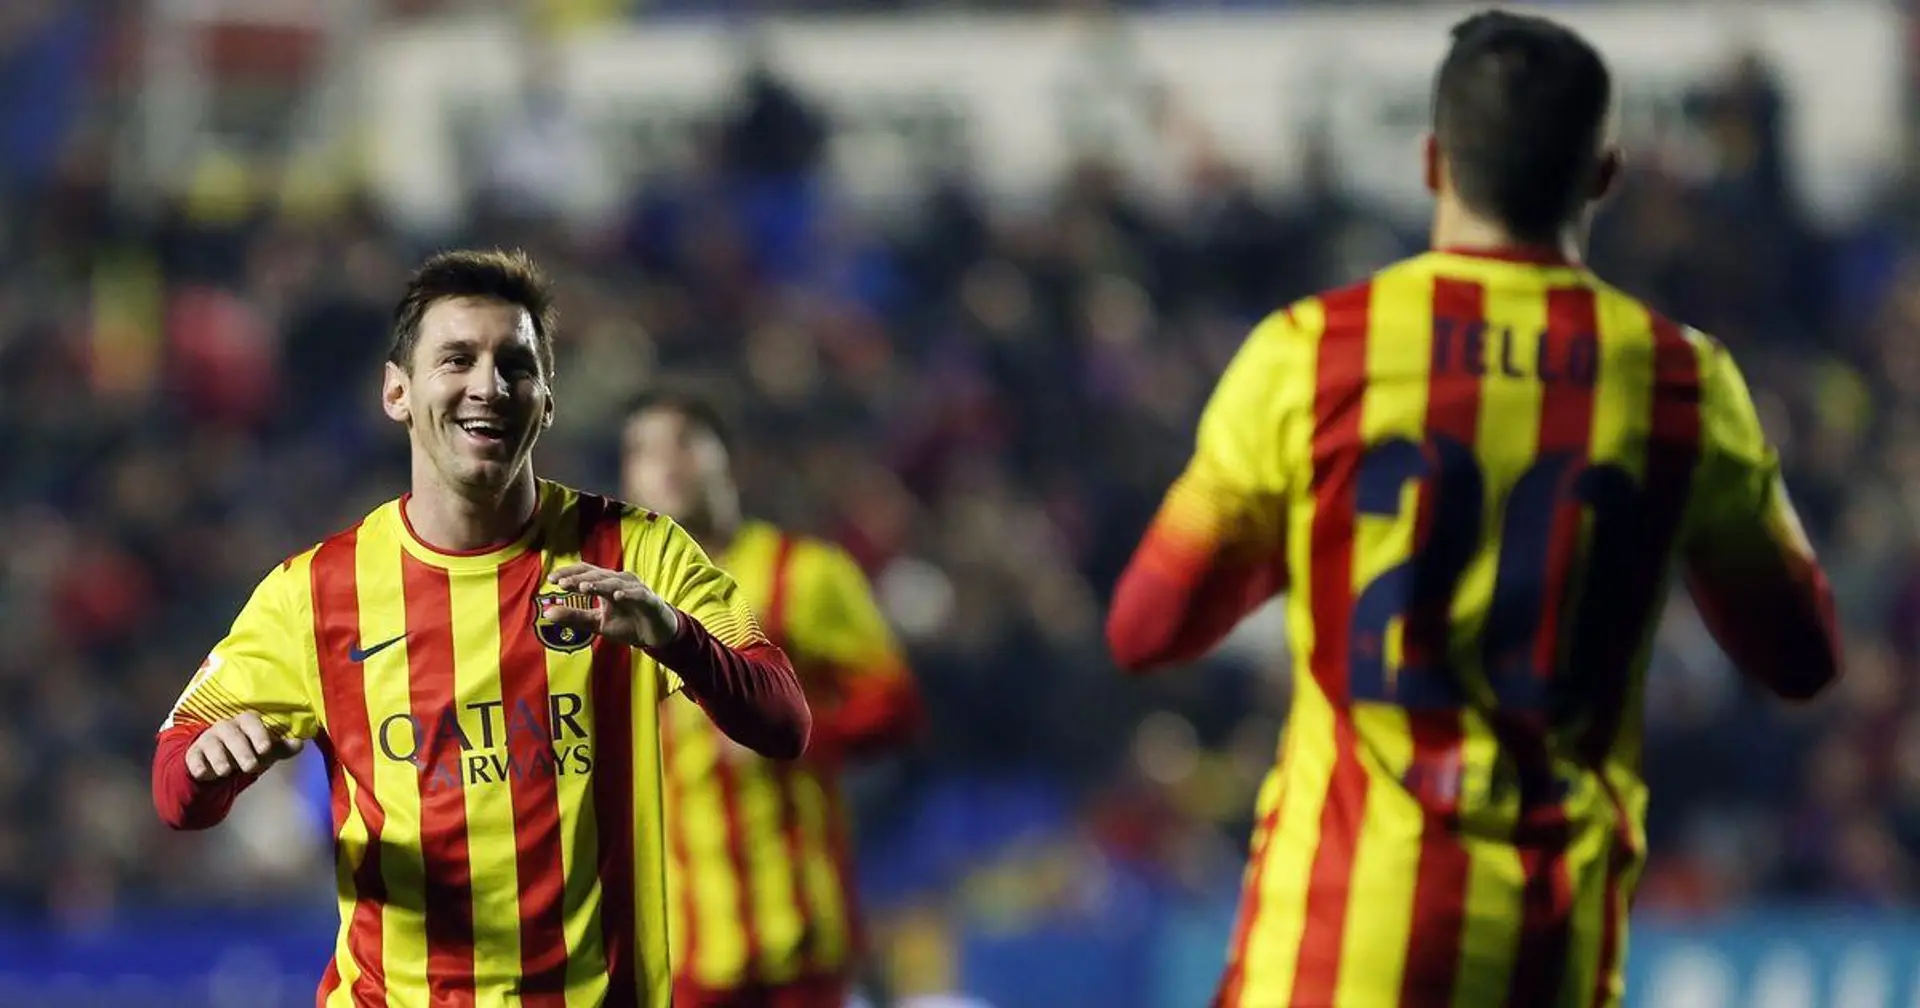 VIDEO RETRO: le premier triplé de passes décisives de Messi et le premier coup du chapeau de Tello (vidéo)